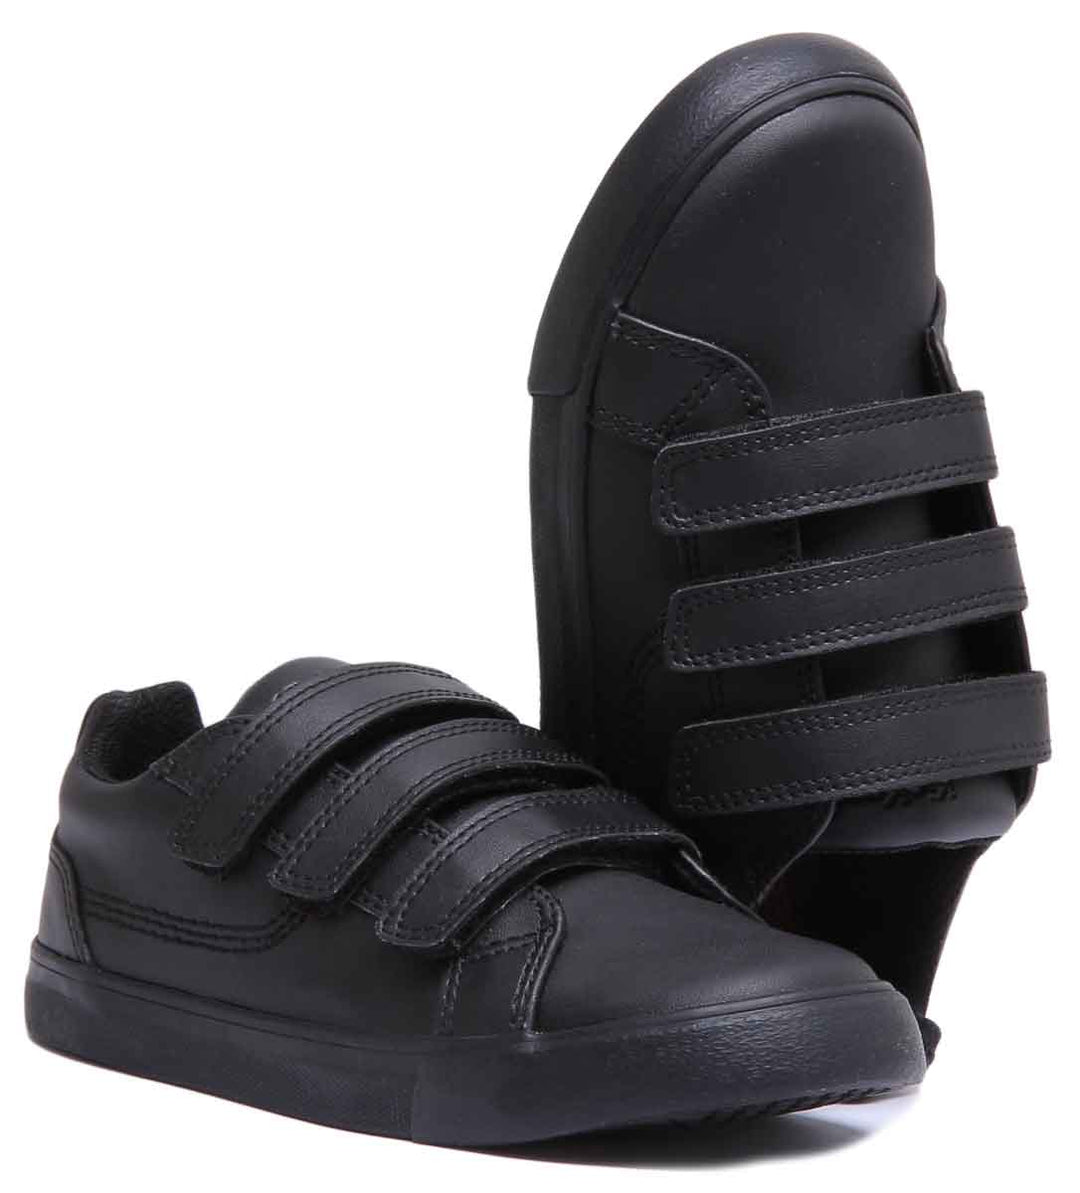 Kickers Tovni Trip Velcro In Black in Junior Size UK 12.5 - 2.5